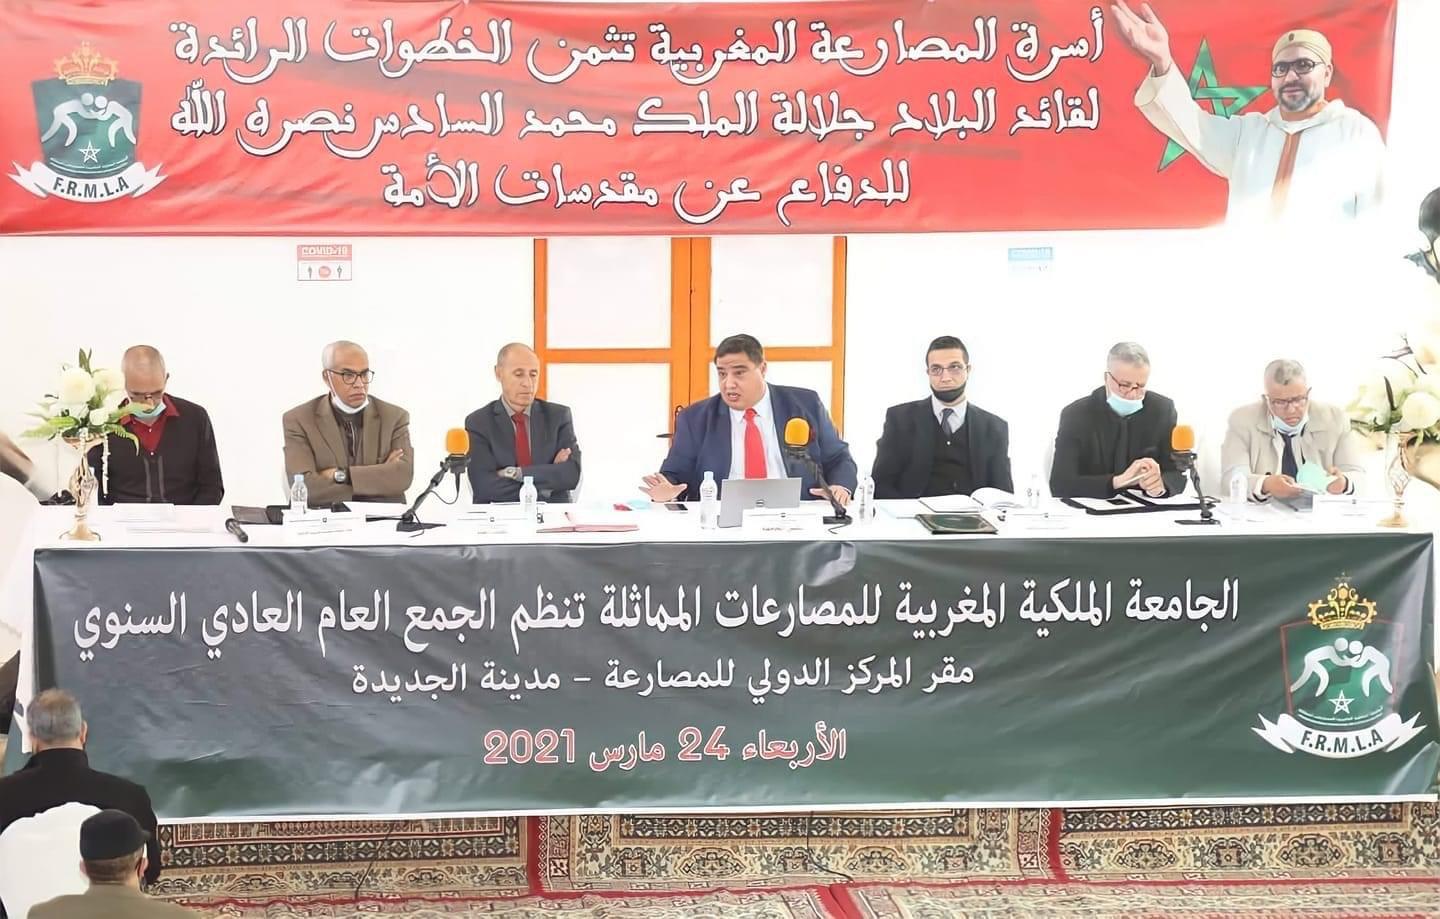 La Fédération Royale Marocaine des Luttes Associées tient son Assemblée Générale